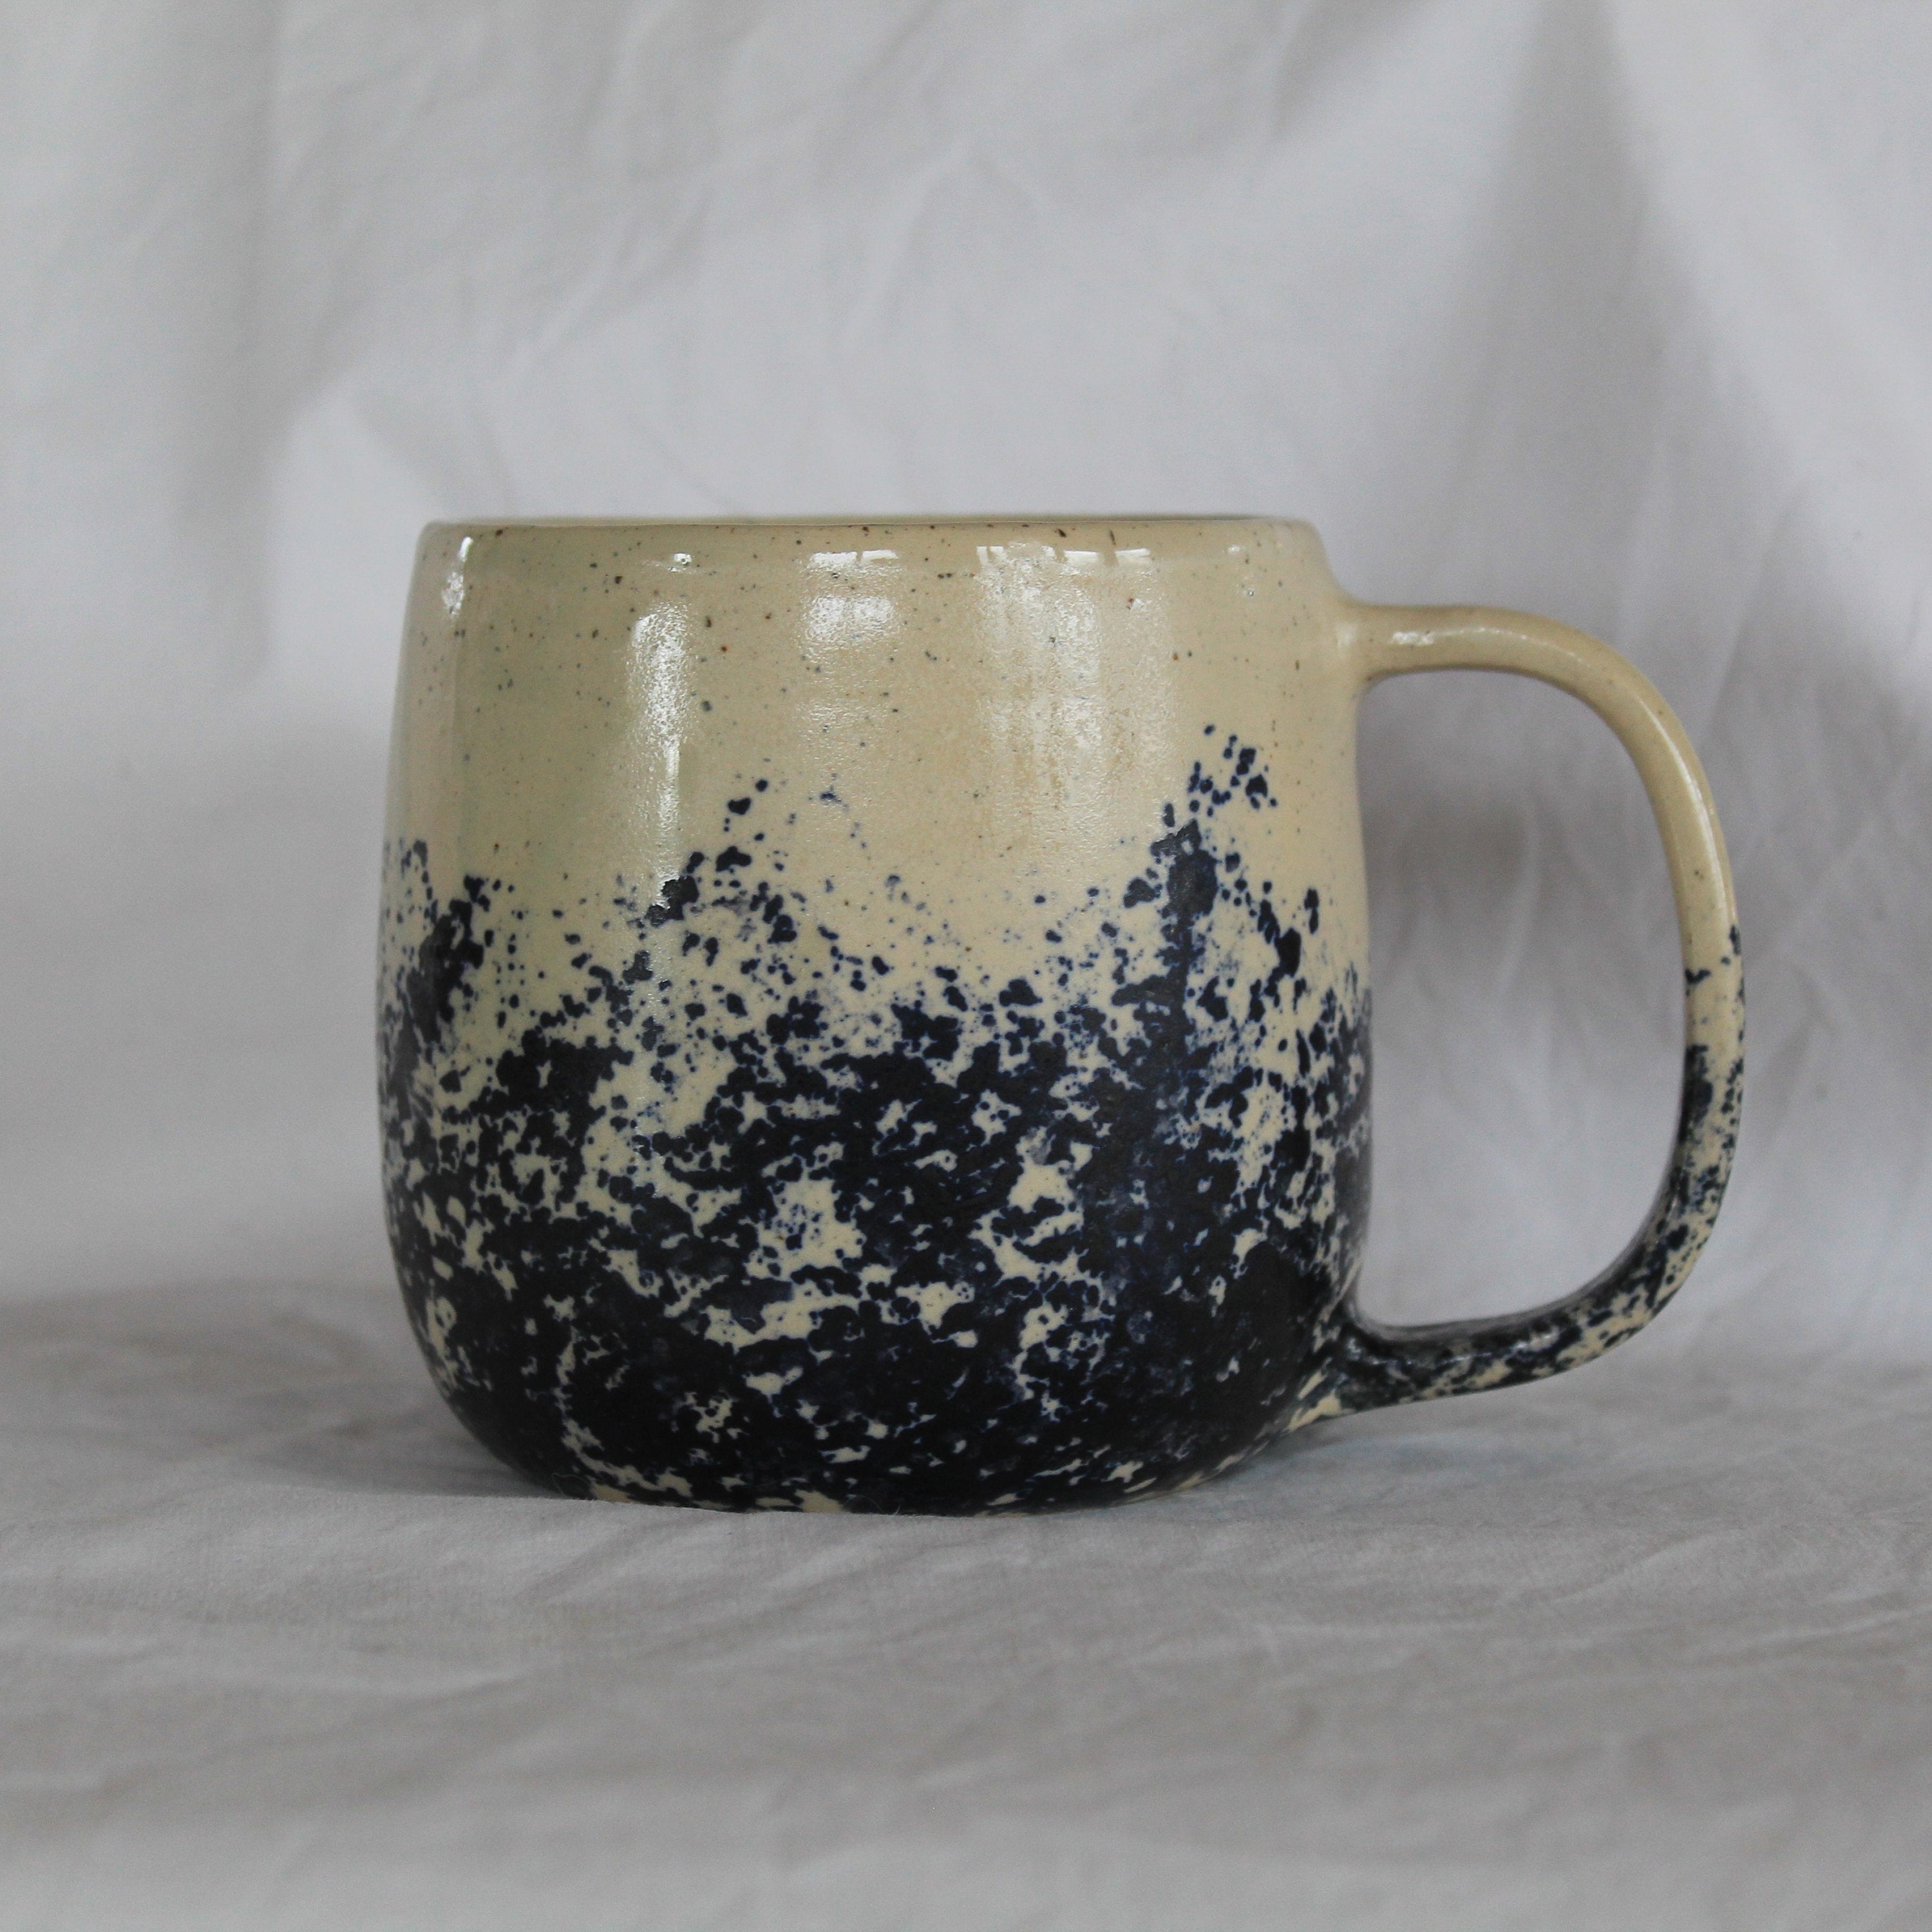 White mug with blue design